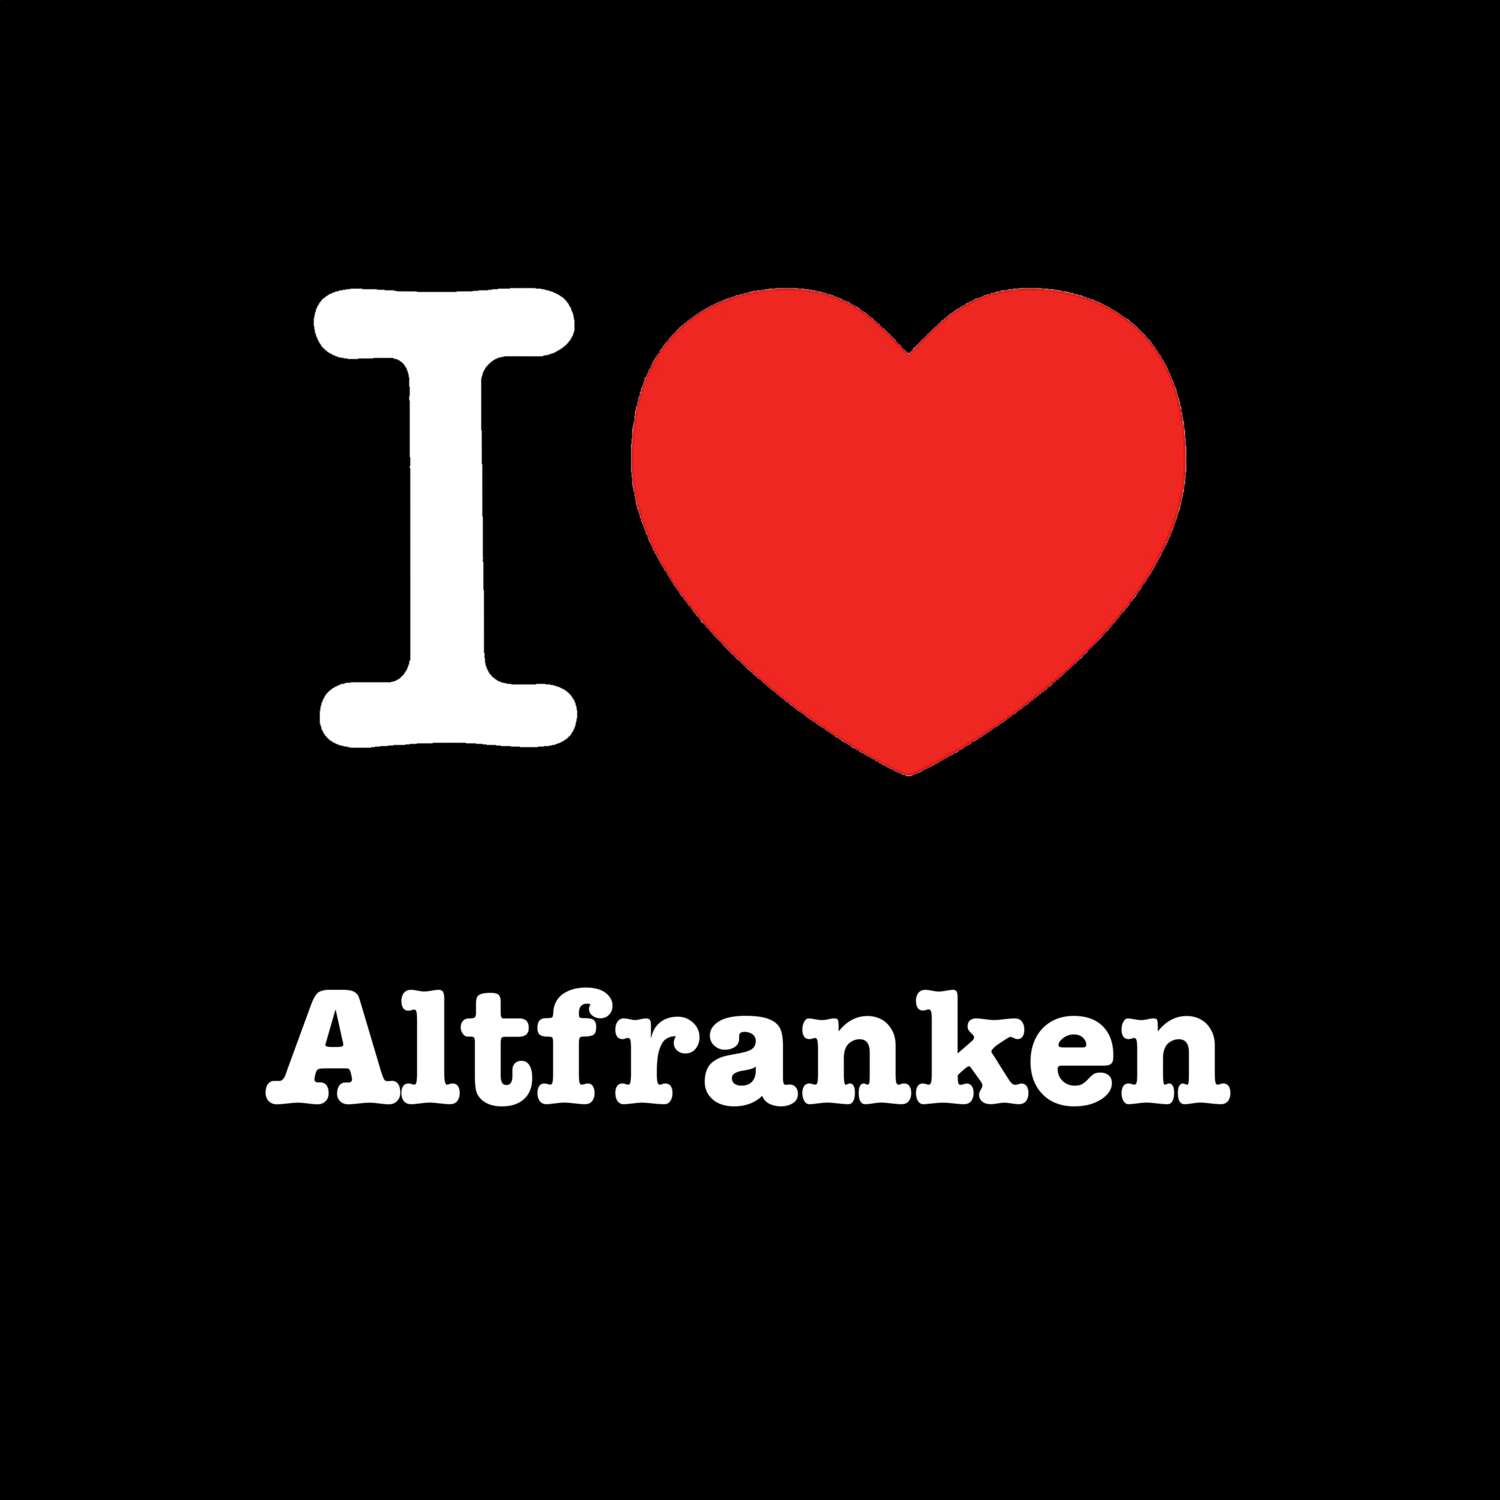 Altfranken T-Shirt »I love«